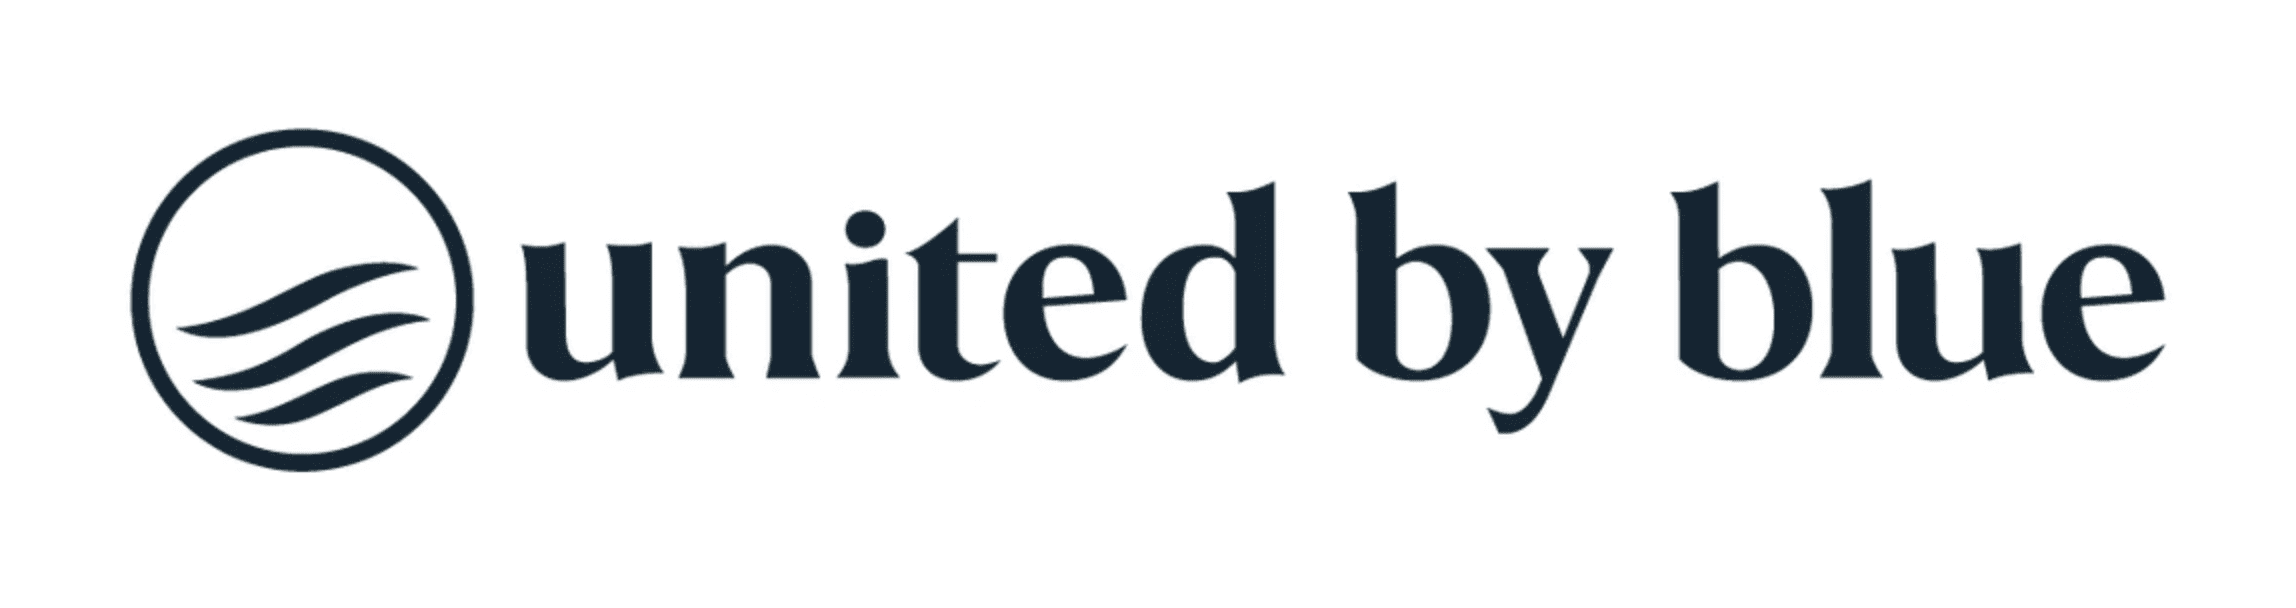 united by blue logo